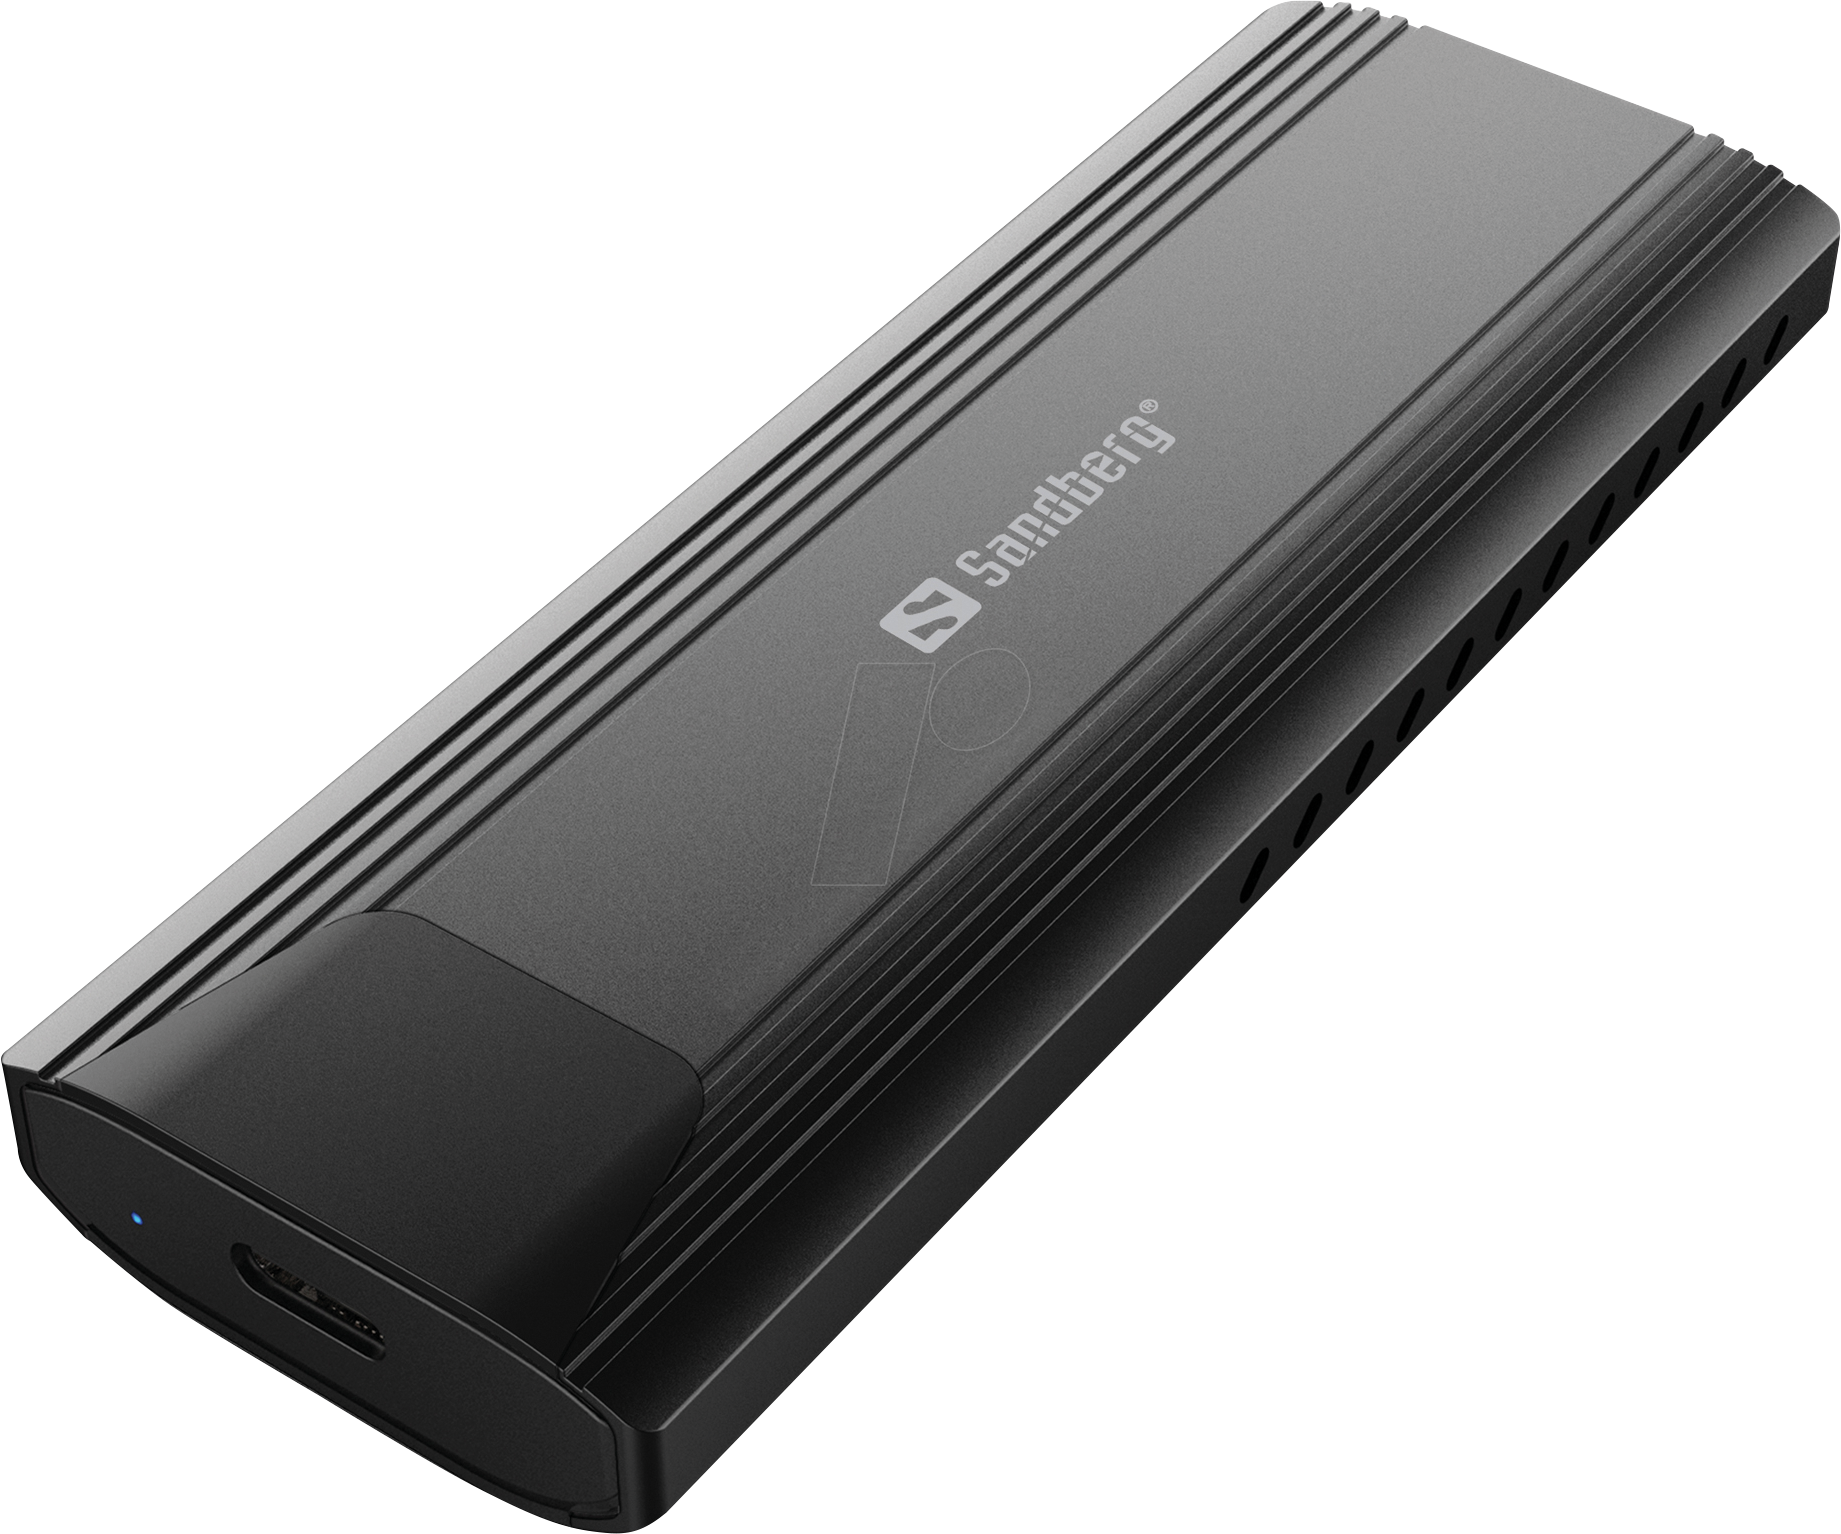 SANDBERG 136-39 - Externes M.2 NVMe SSD Gehäuse mit USB 3.1 von Sandberg